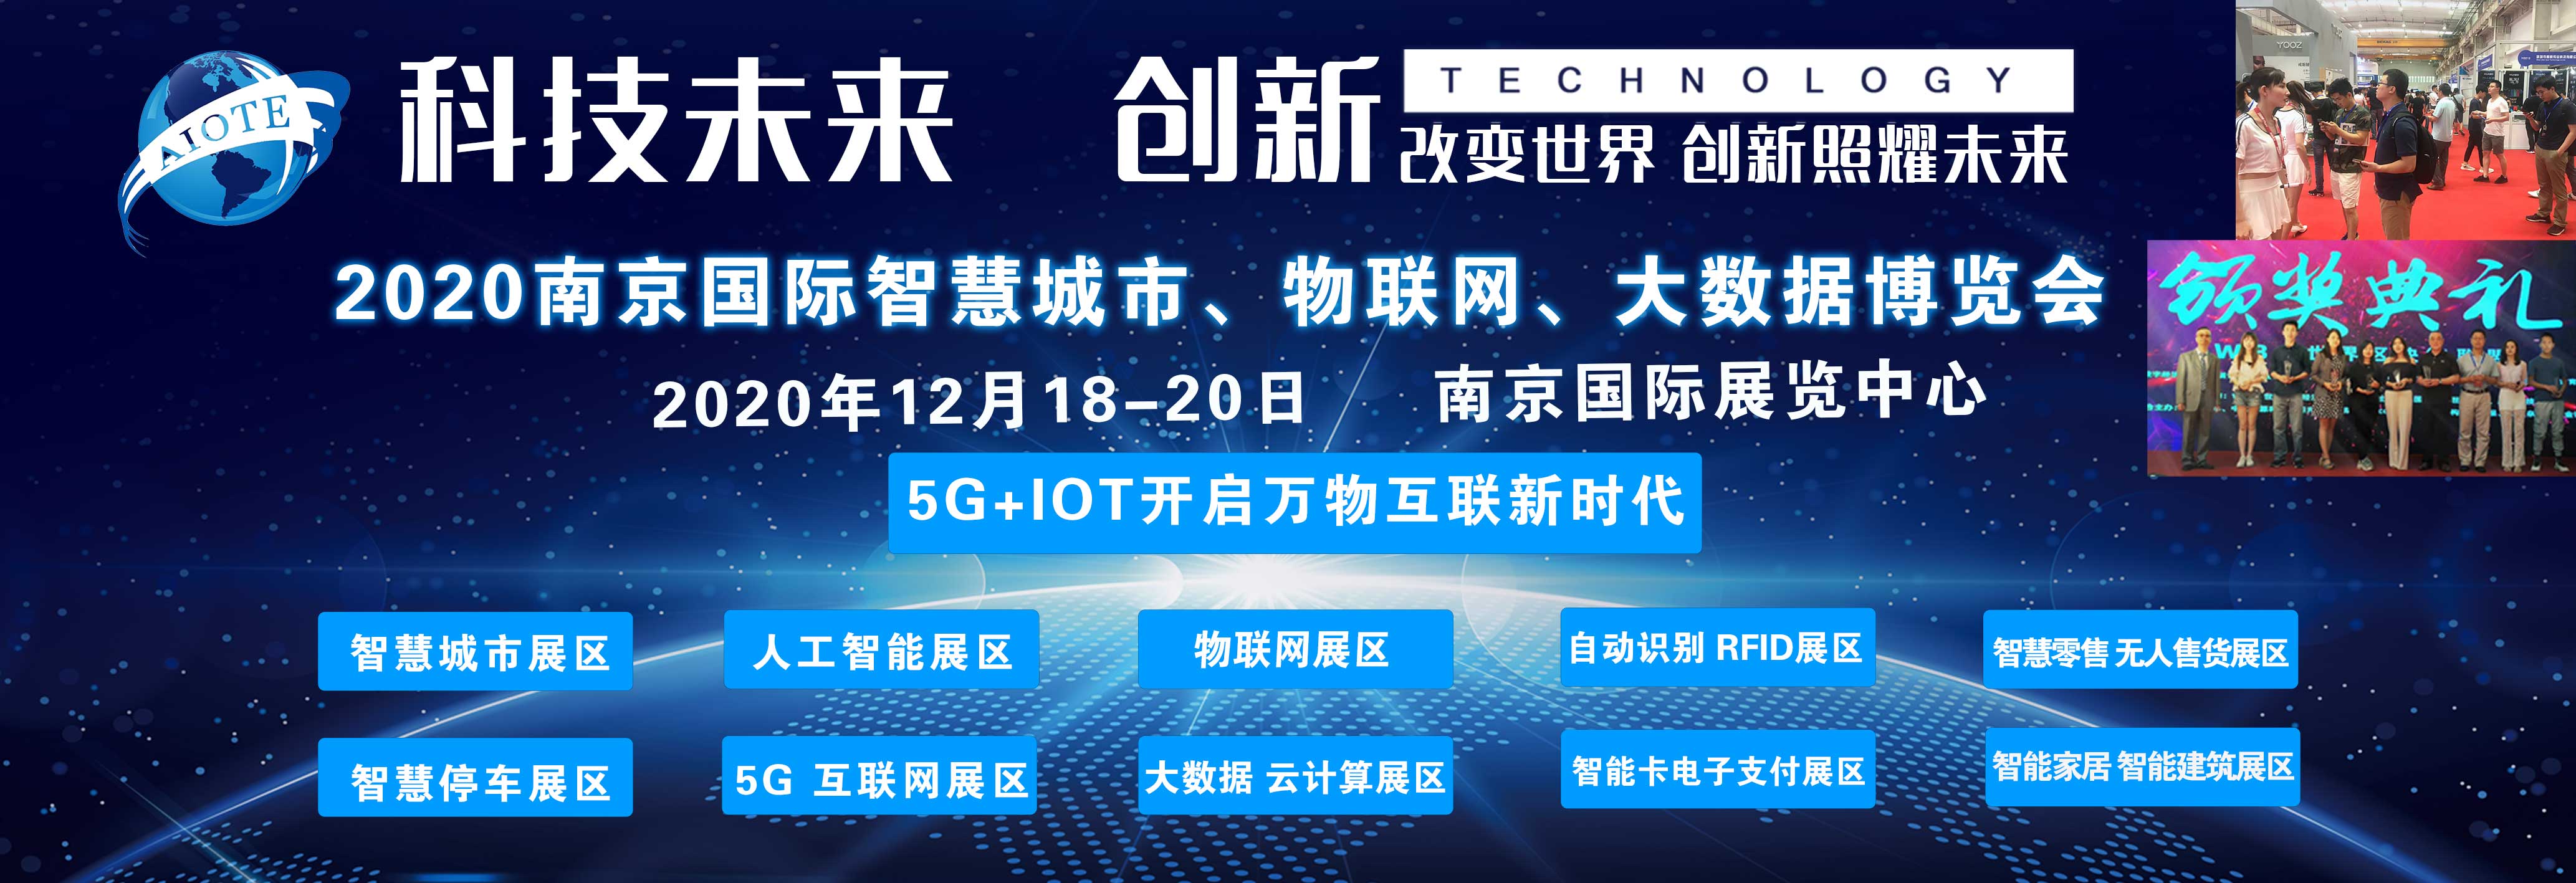 年度科技行业盛会“2020南京智博会”12月在南京国际展览中心召开